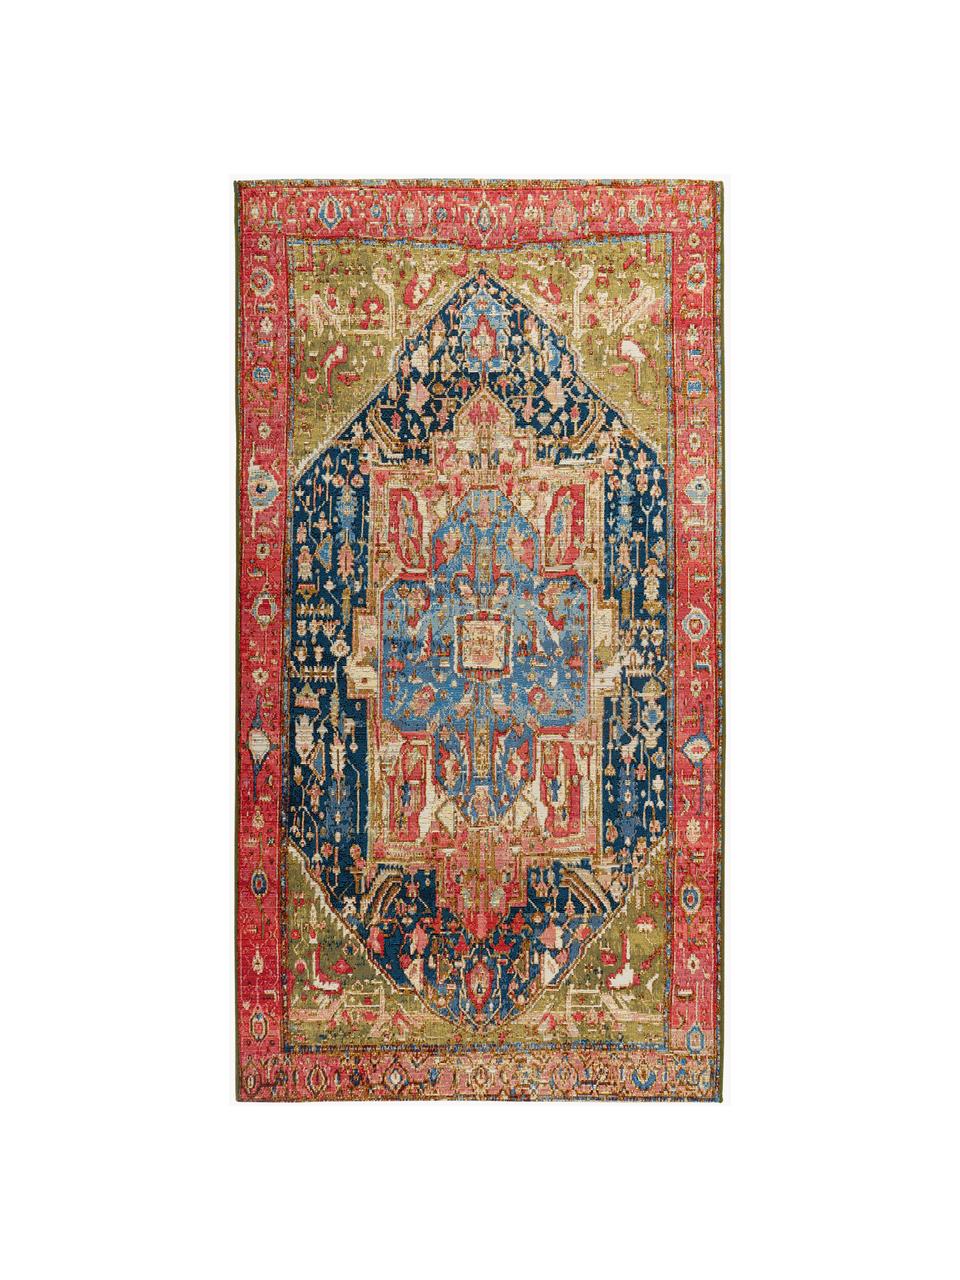 Interiérový/exteriérový koberec Gobelina, 76% polypropylen, 24% polyester, Více barev, Š 120 cm, D 170 cm (velikost S)